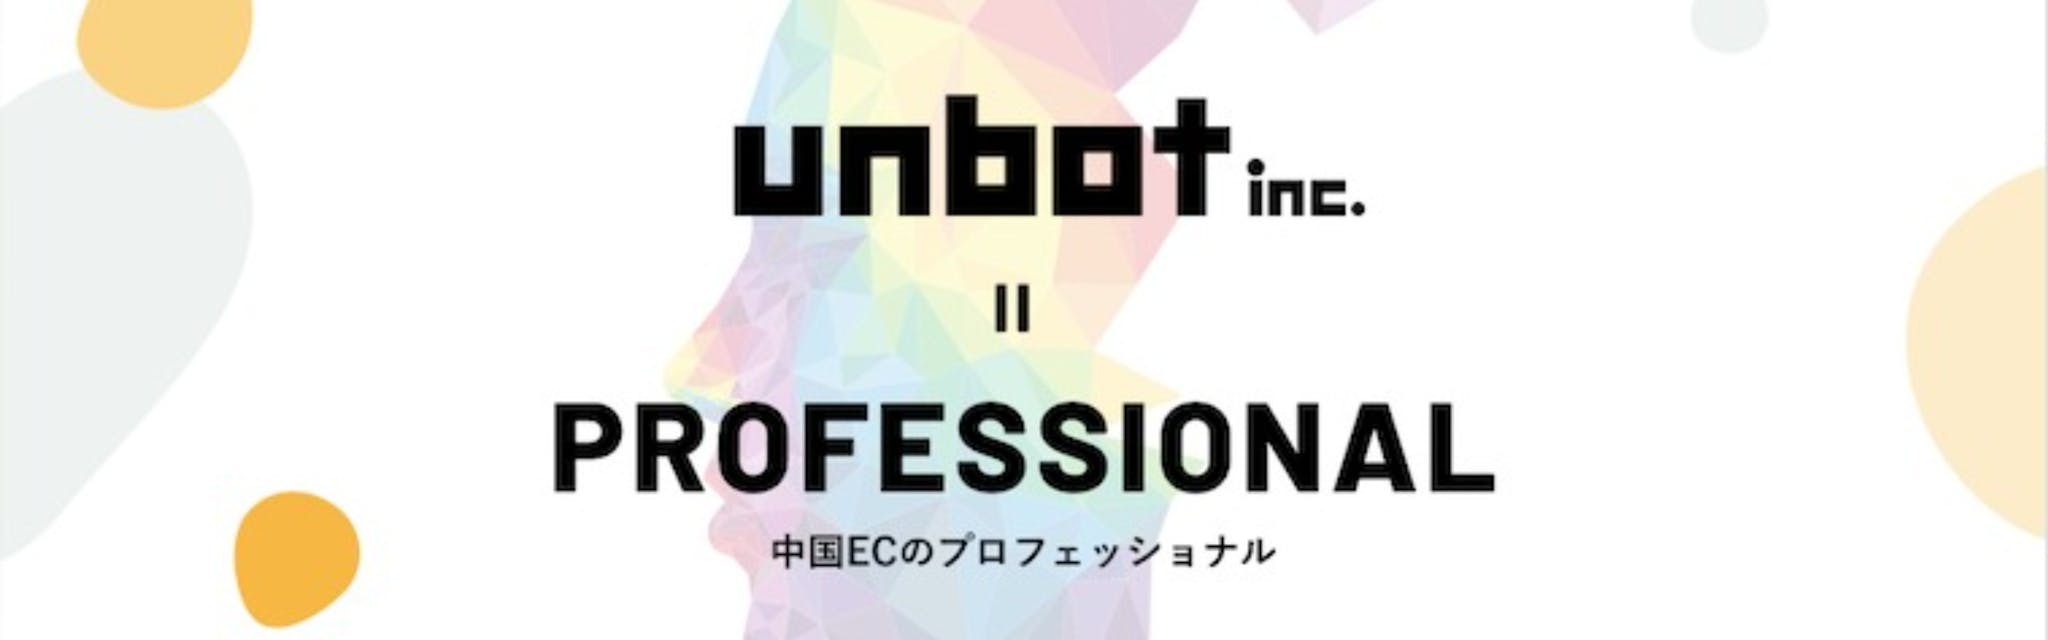 株式会社unbot - カバー画像